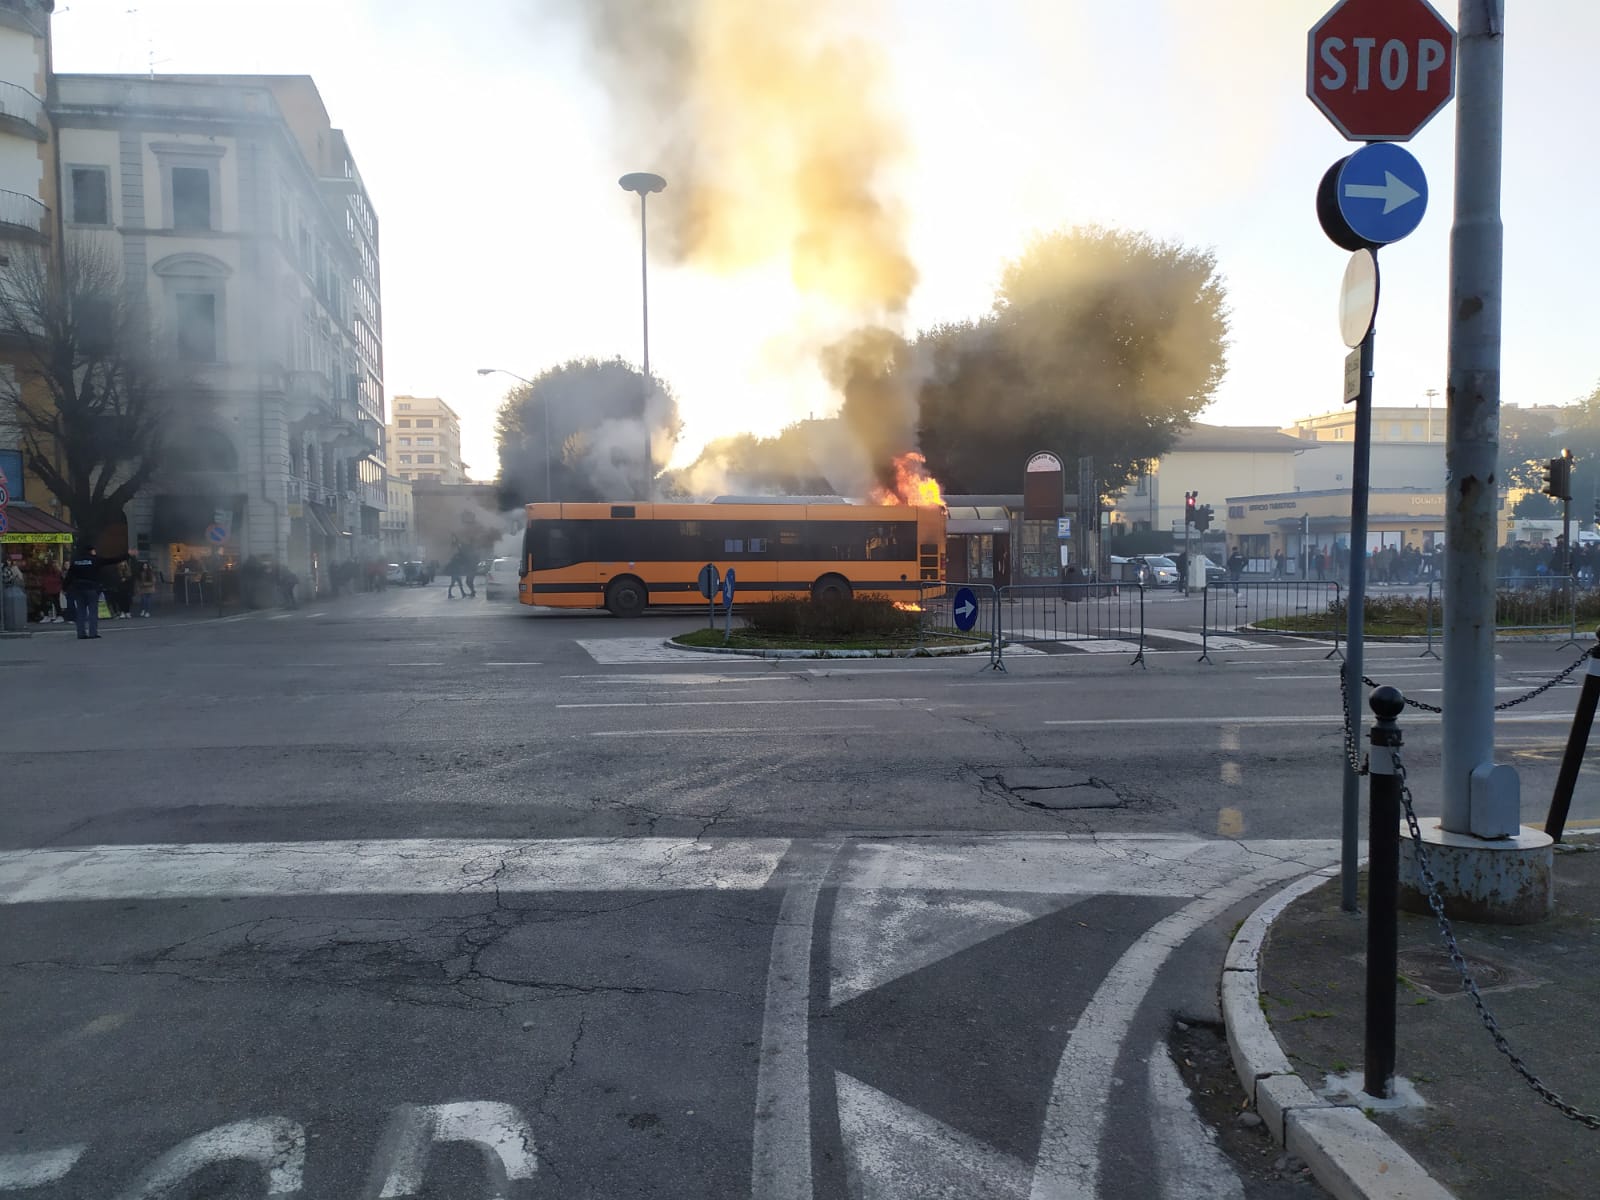 Paura in centro, autobus in fiamme. Nessun ferito. Erano appena scesi i ragazzi delle scuole. Polverone politico sulla sicurezza